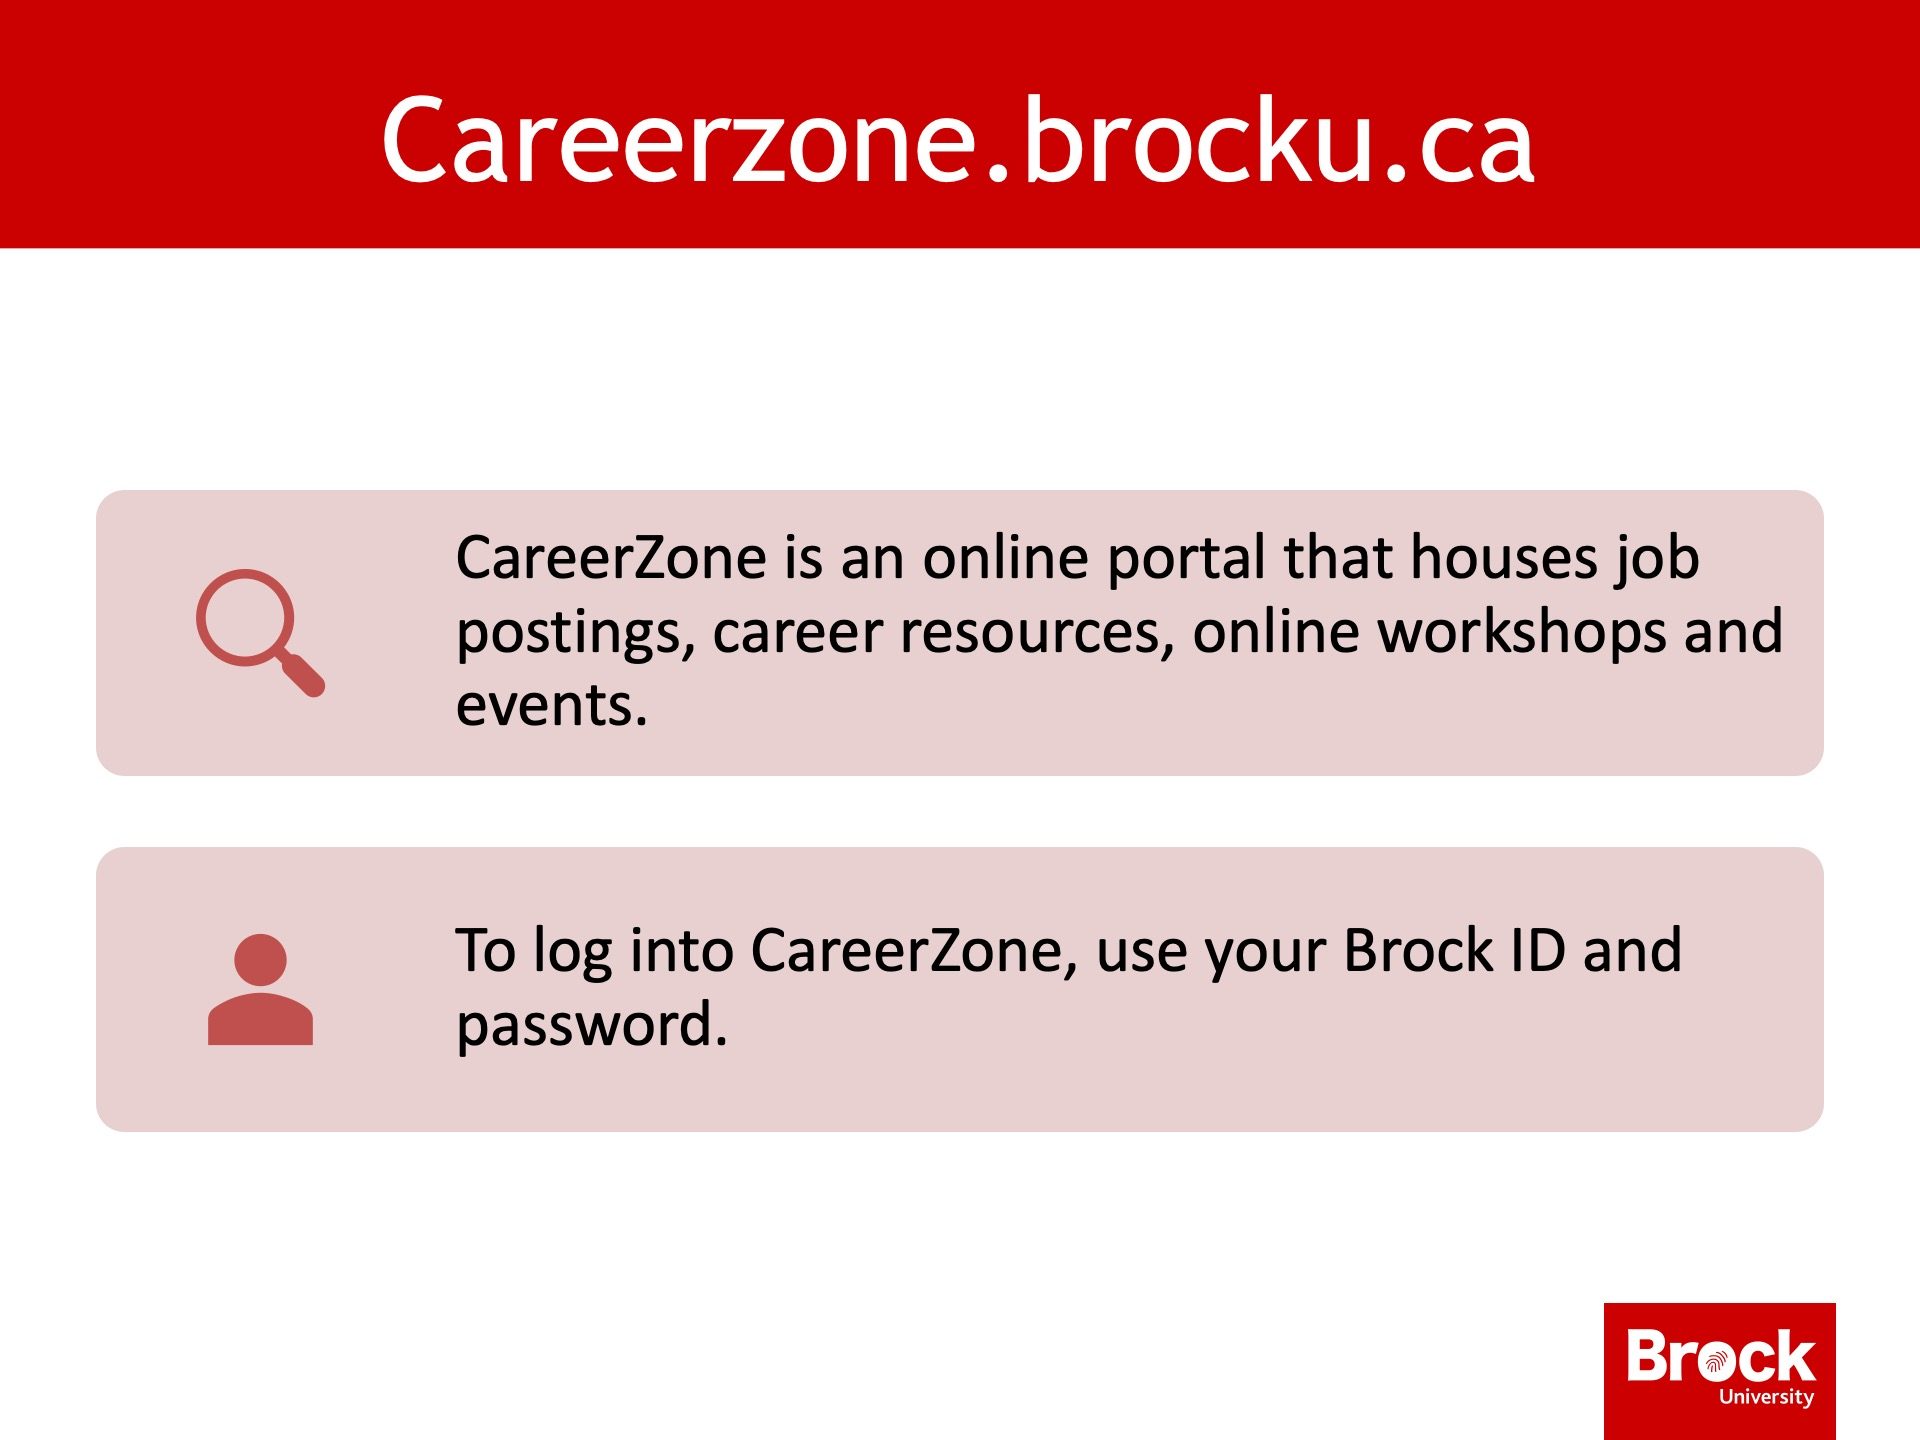 Information about the CareerZone website - careerzone.brocku.ca